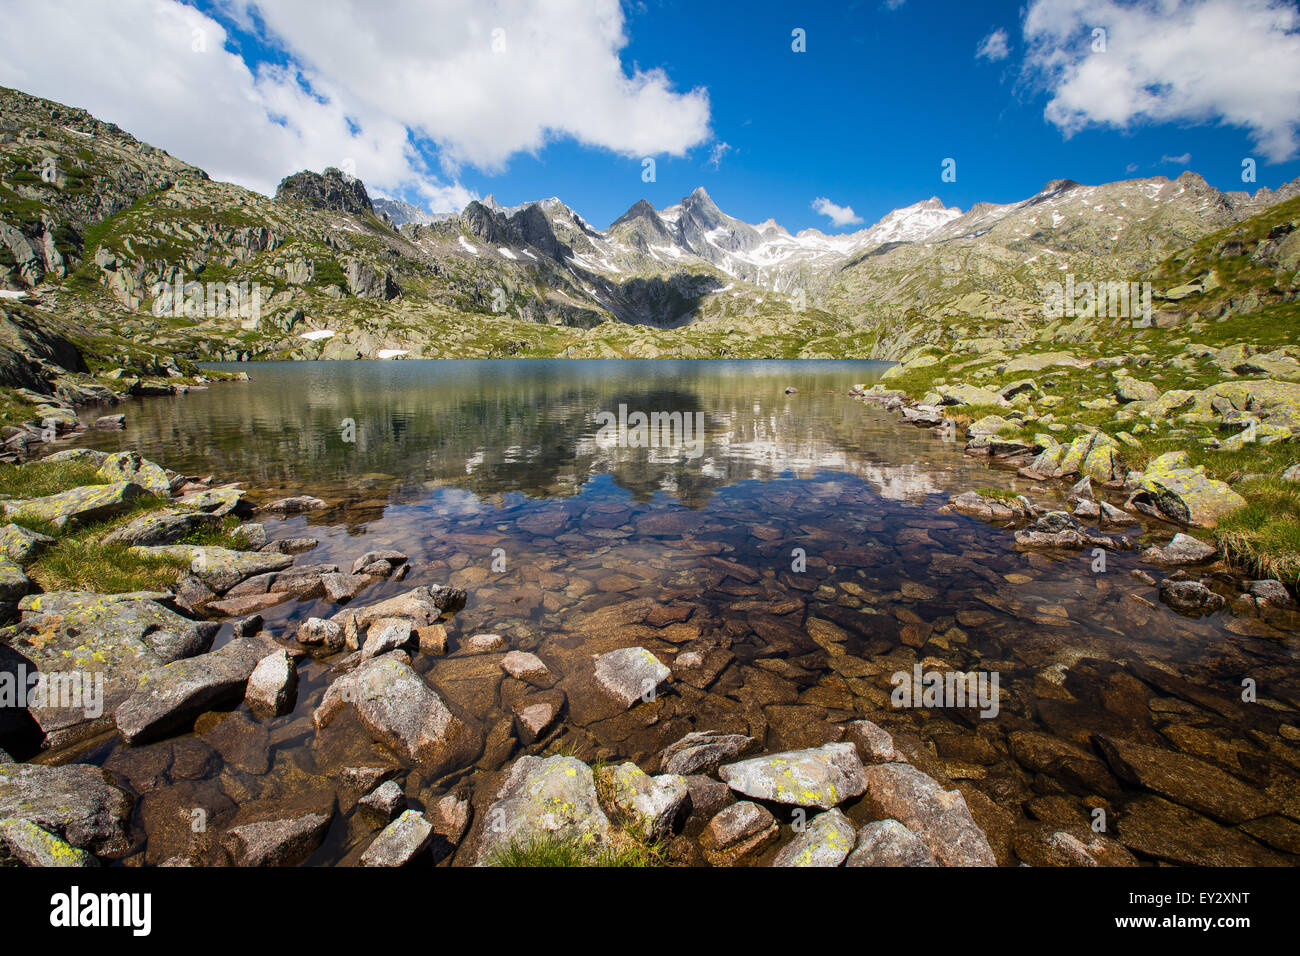 Lago Nero di Cornisello. The Adamello-Brenta natural park. Trentino. Nambrone valley, Pinzolo. Italian Alps. Europe. Stock Photo